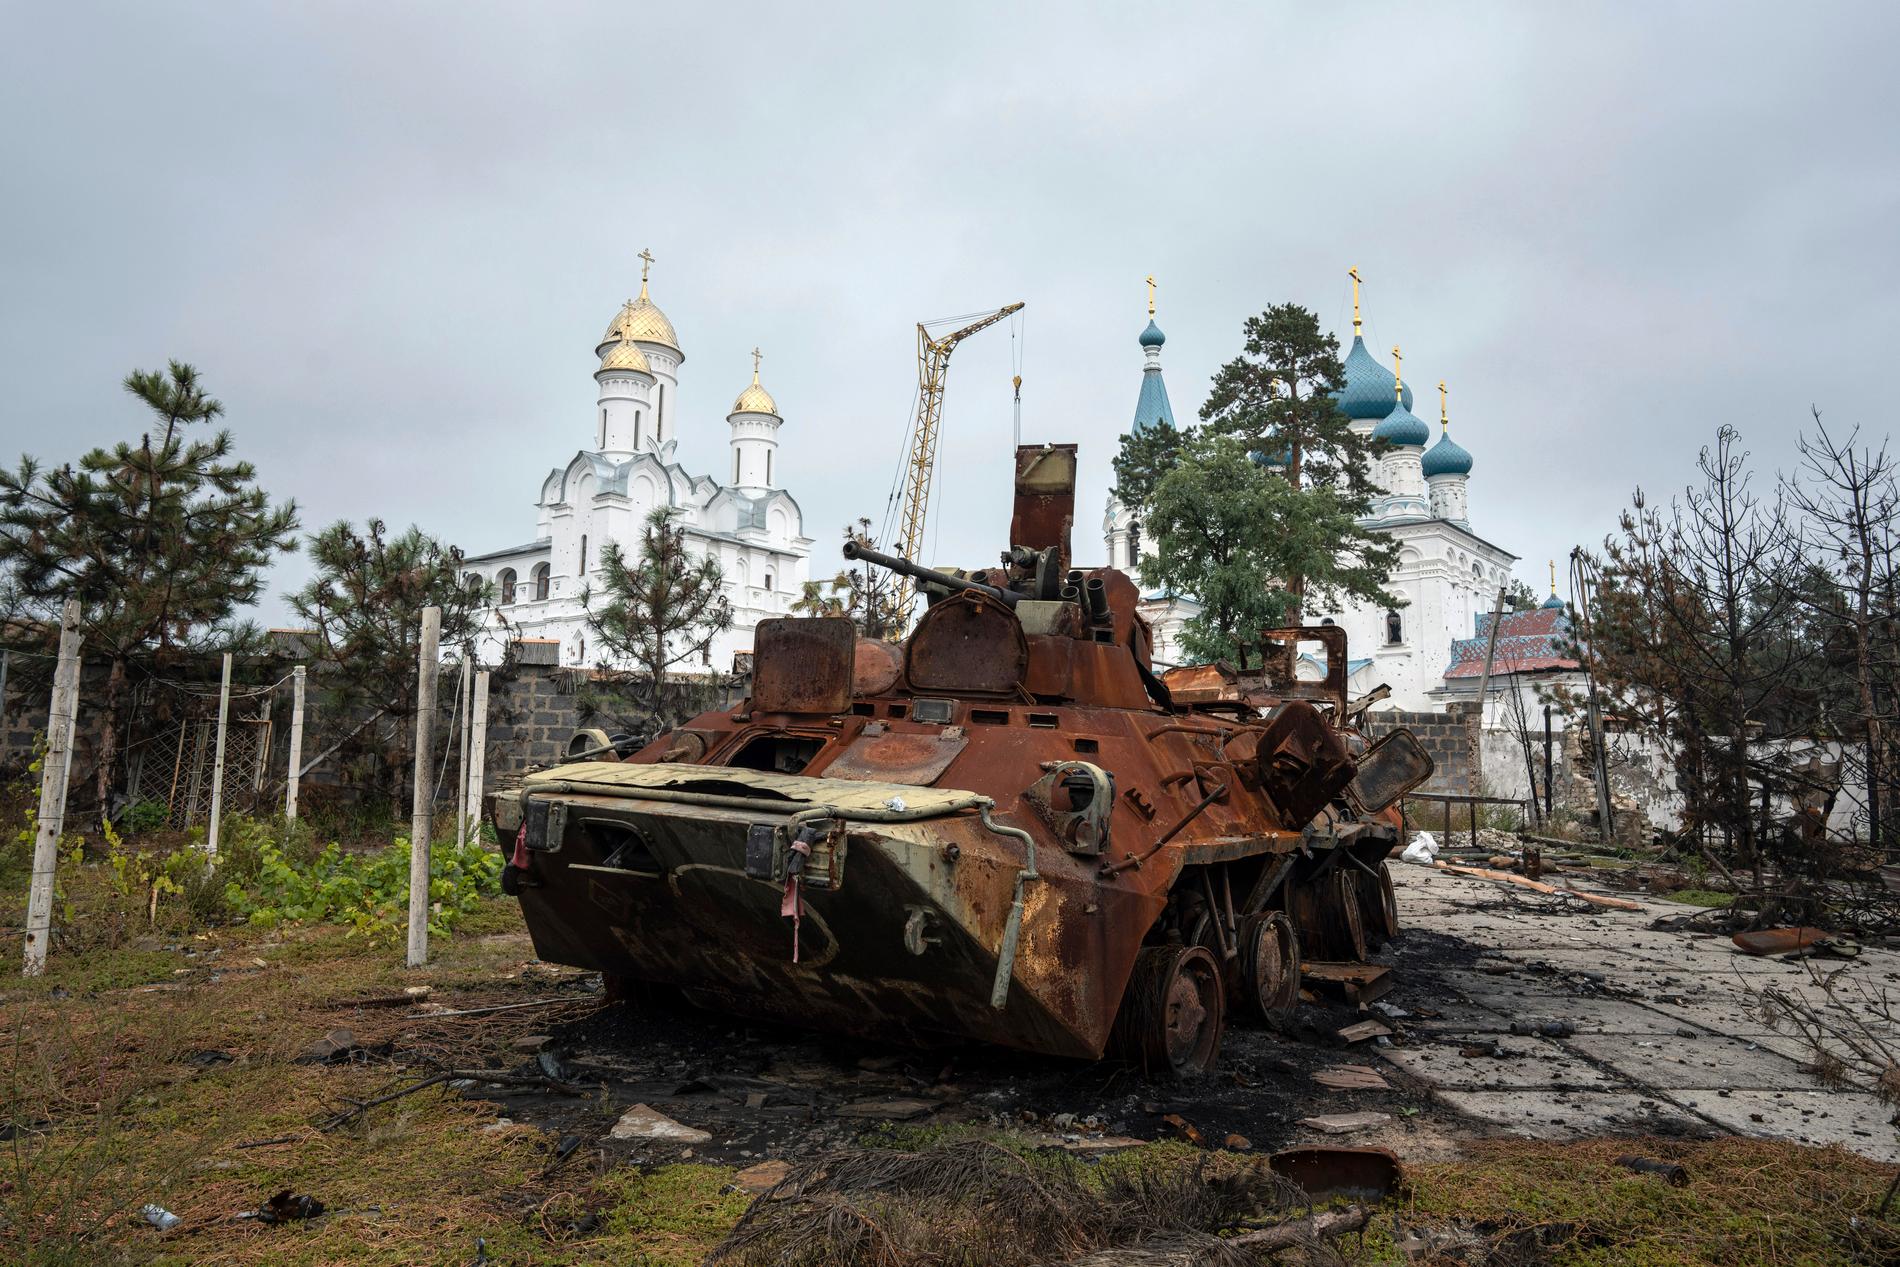 2 OKTOBER: Demolerat ryskt trupptransportfordon på en privat tomt i Izium. I bakgrunden syns en rysk-ortodox kyrka.